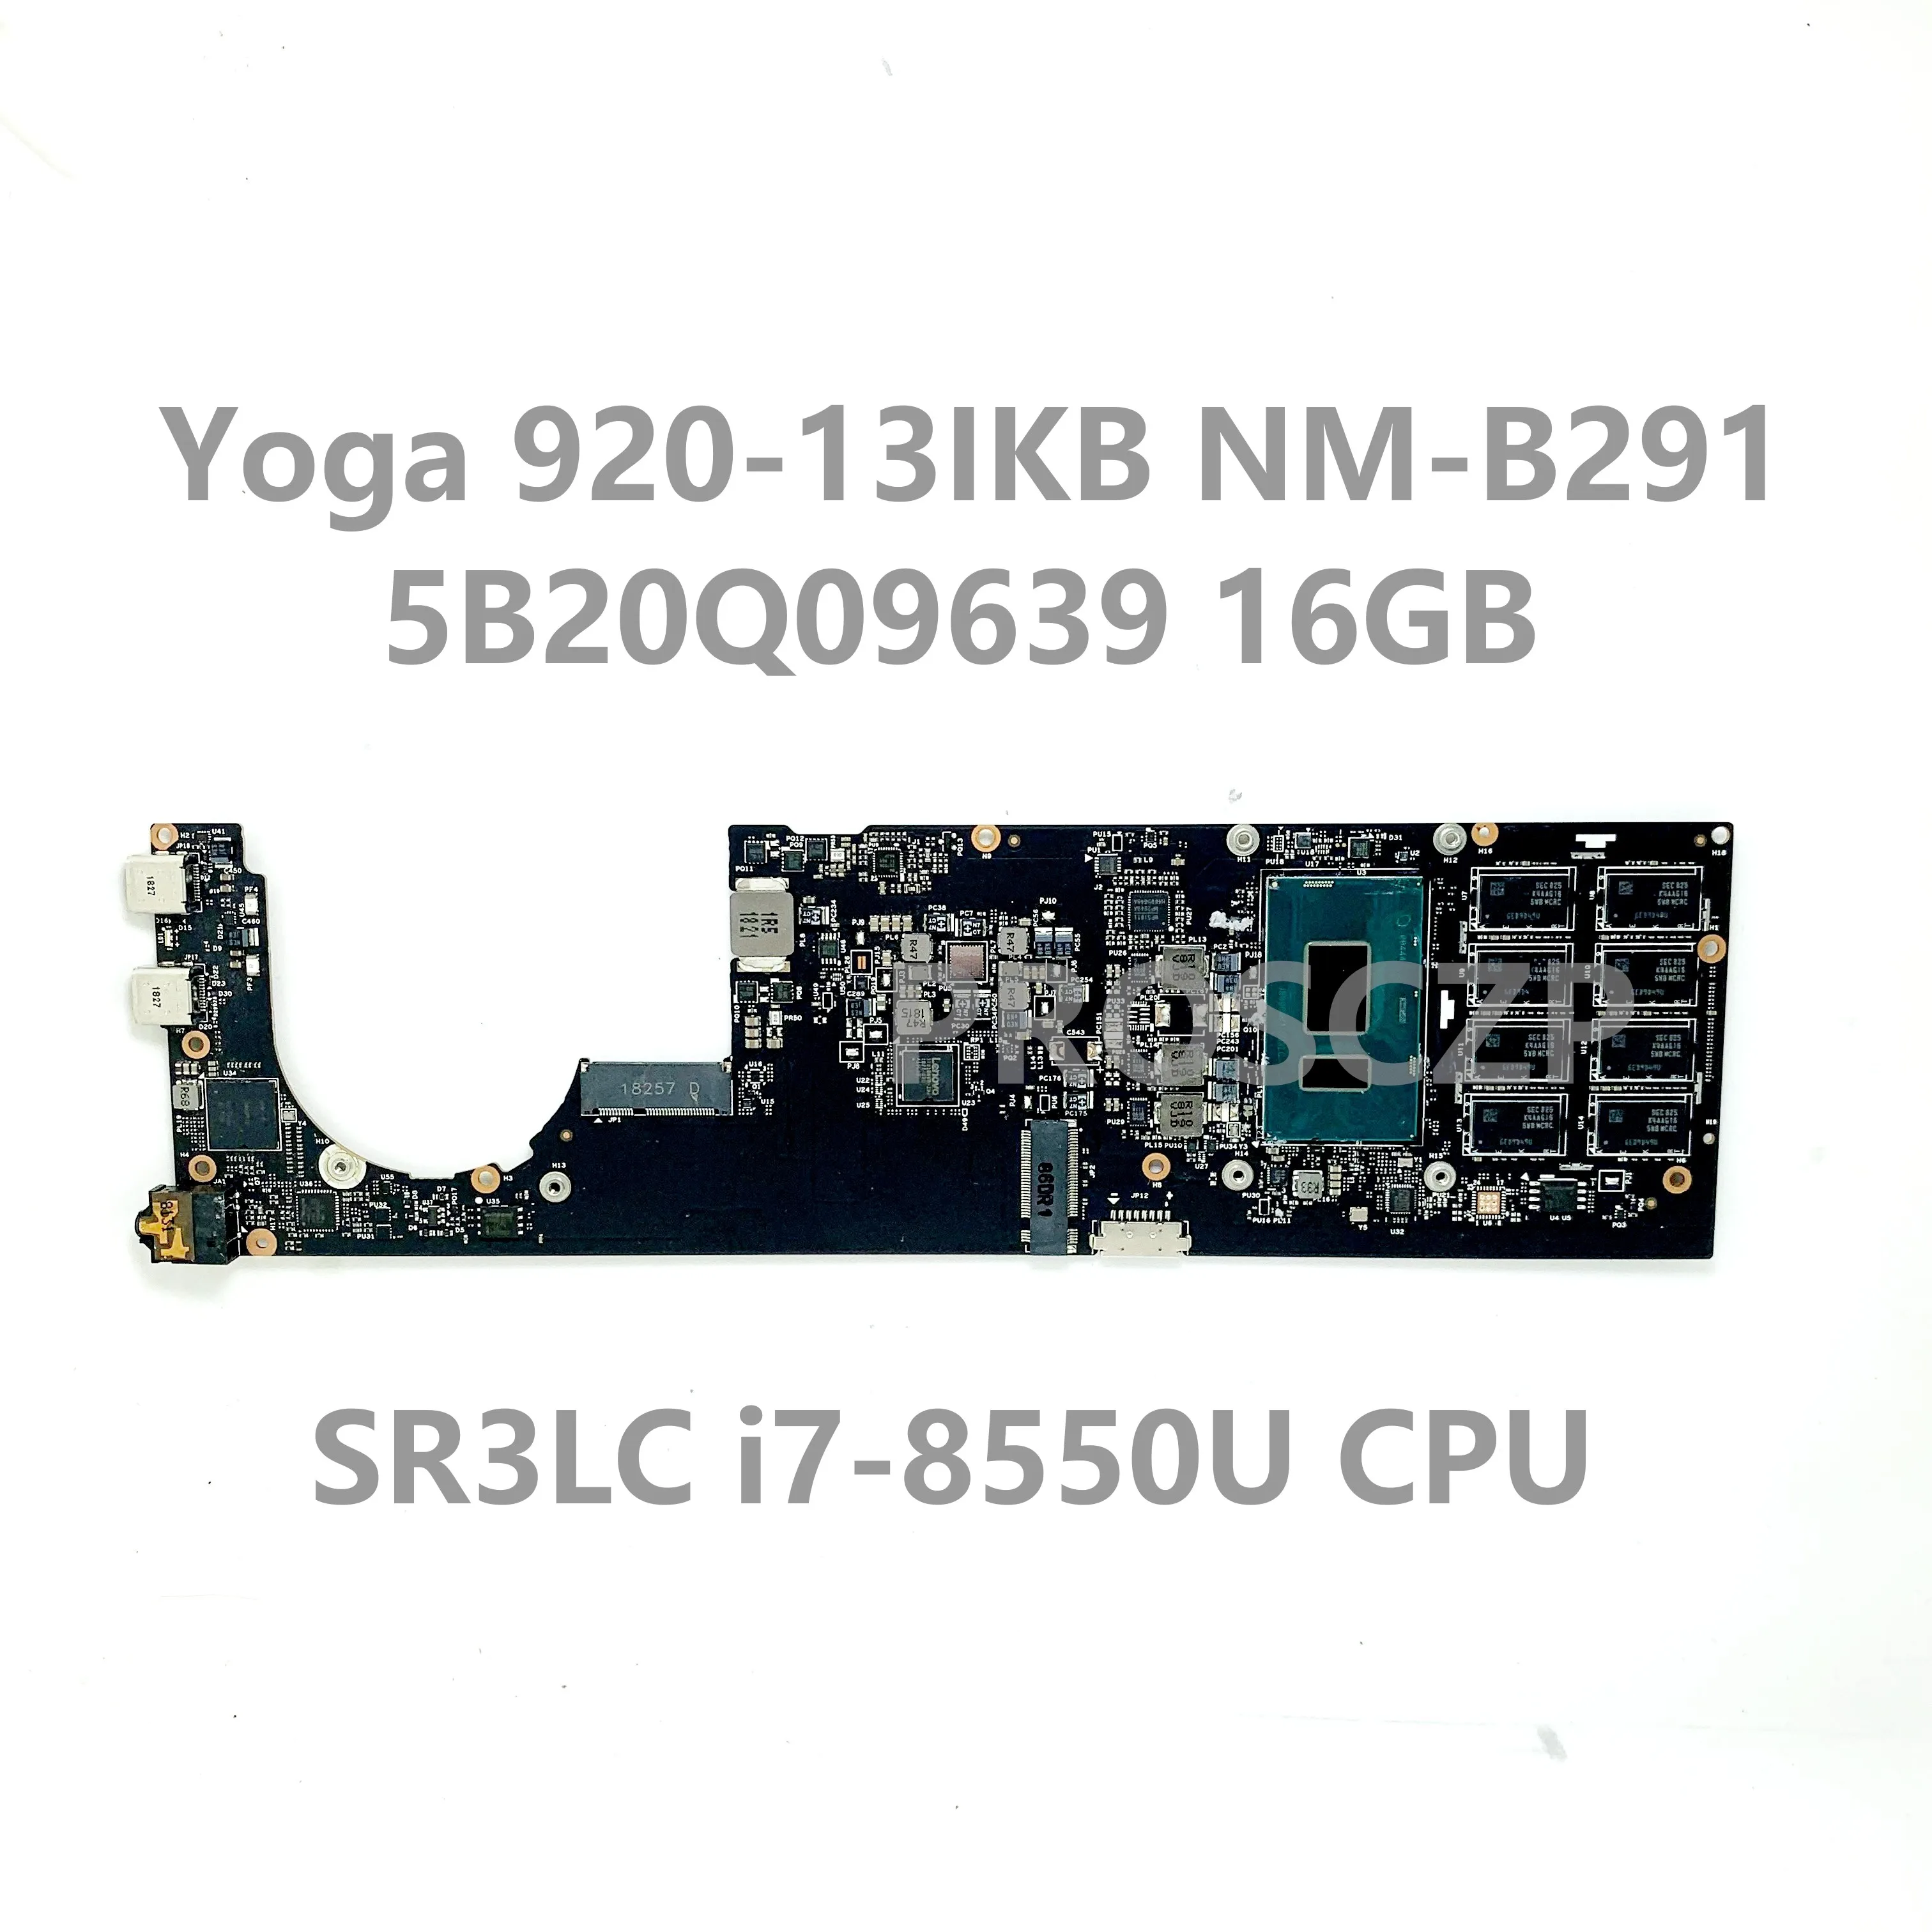 Placa-mãe DYG60 NM-B291 Para o Lenovo Yoga 920-13IKB Laptop placa-Mãe FRU:5B20Q09639 Com SR3LC i7-8550U CPU 16GB 100% Testado